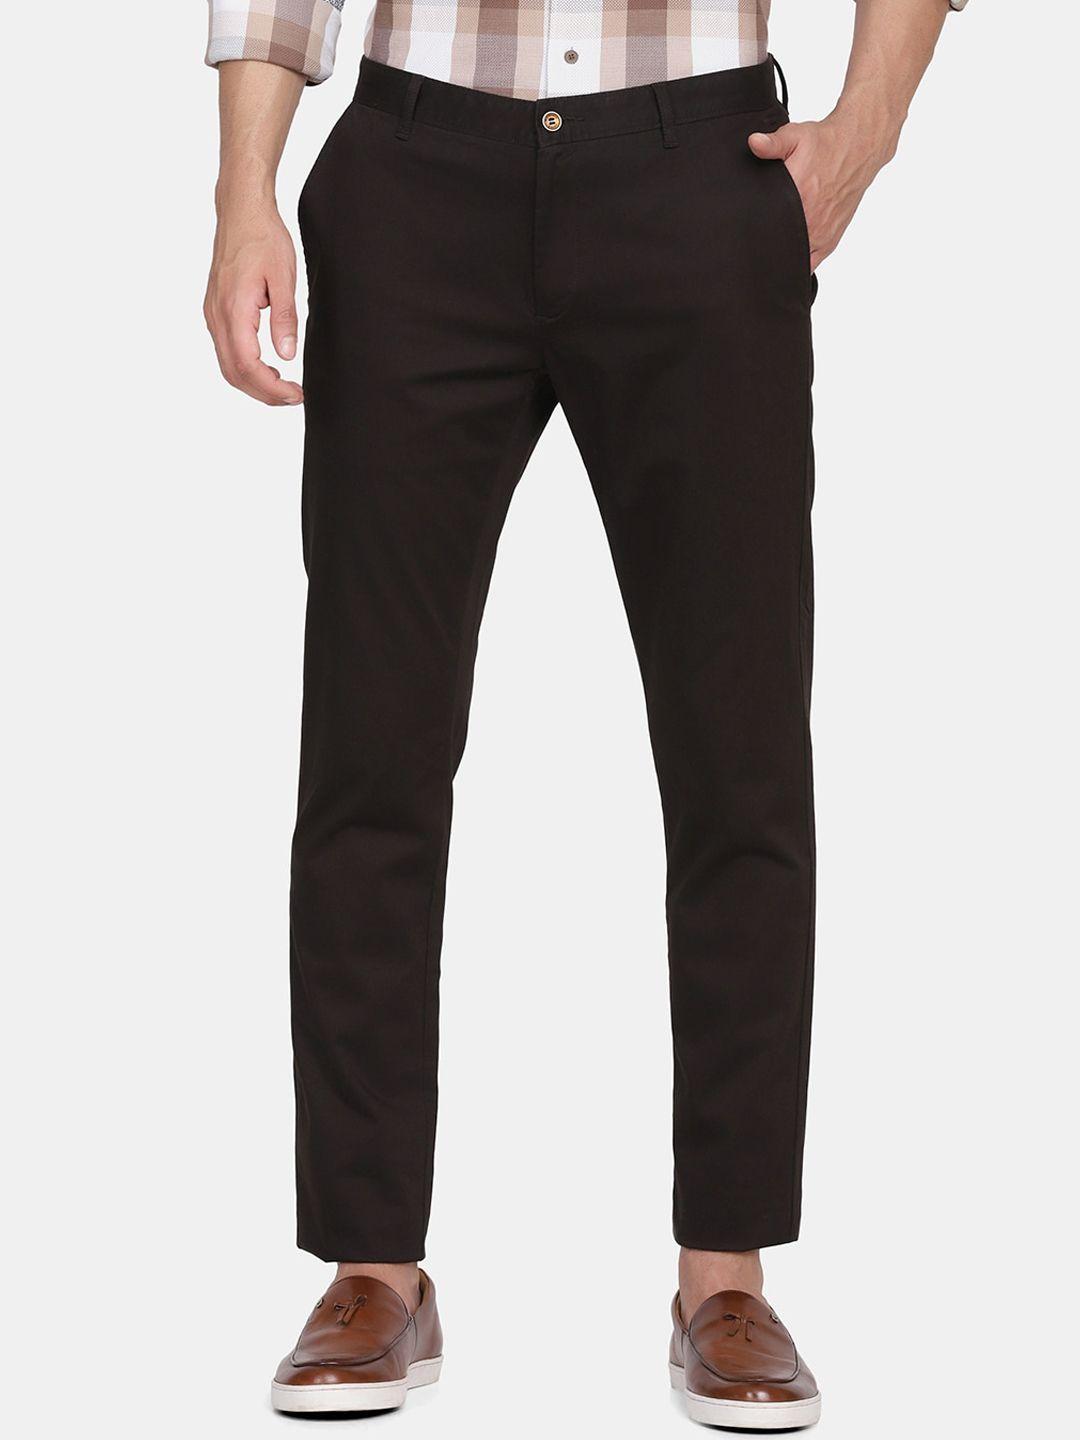 blackberrys-men-brown-b-91-skinny-fit-chinos-trousers